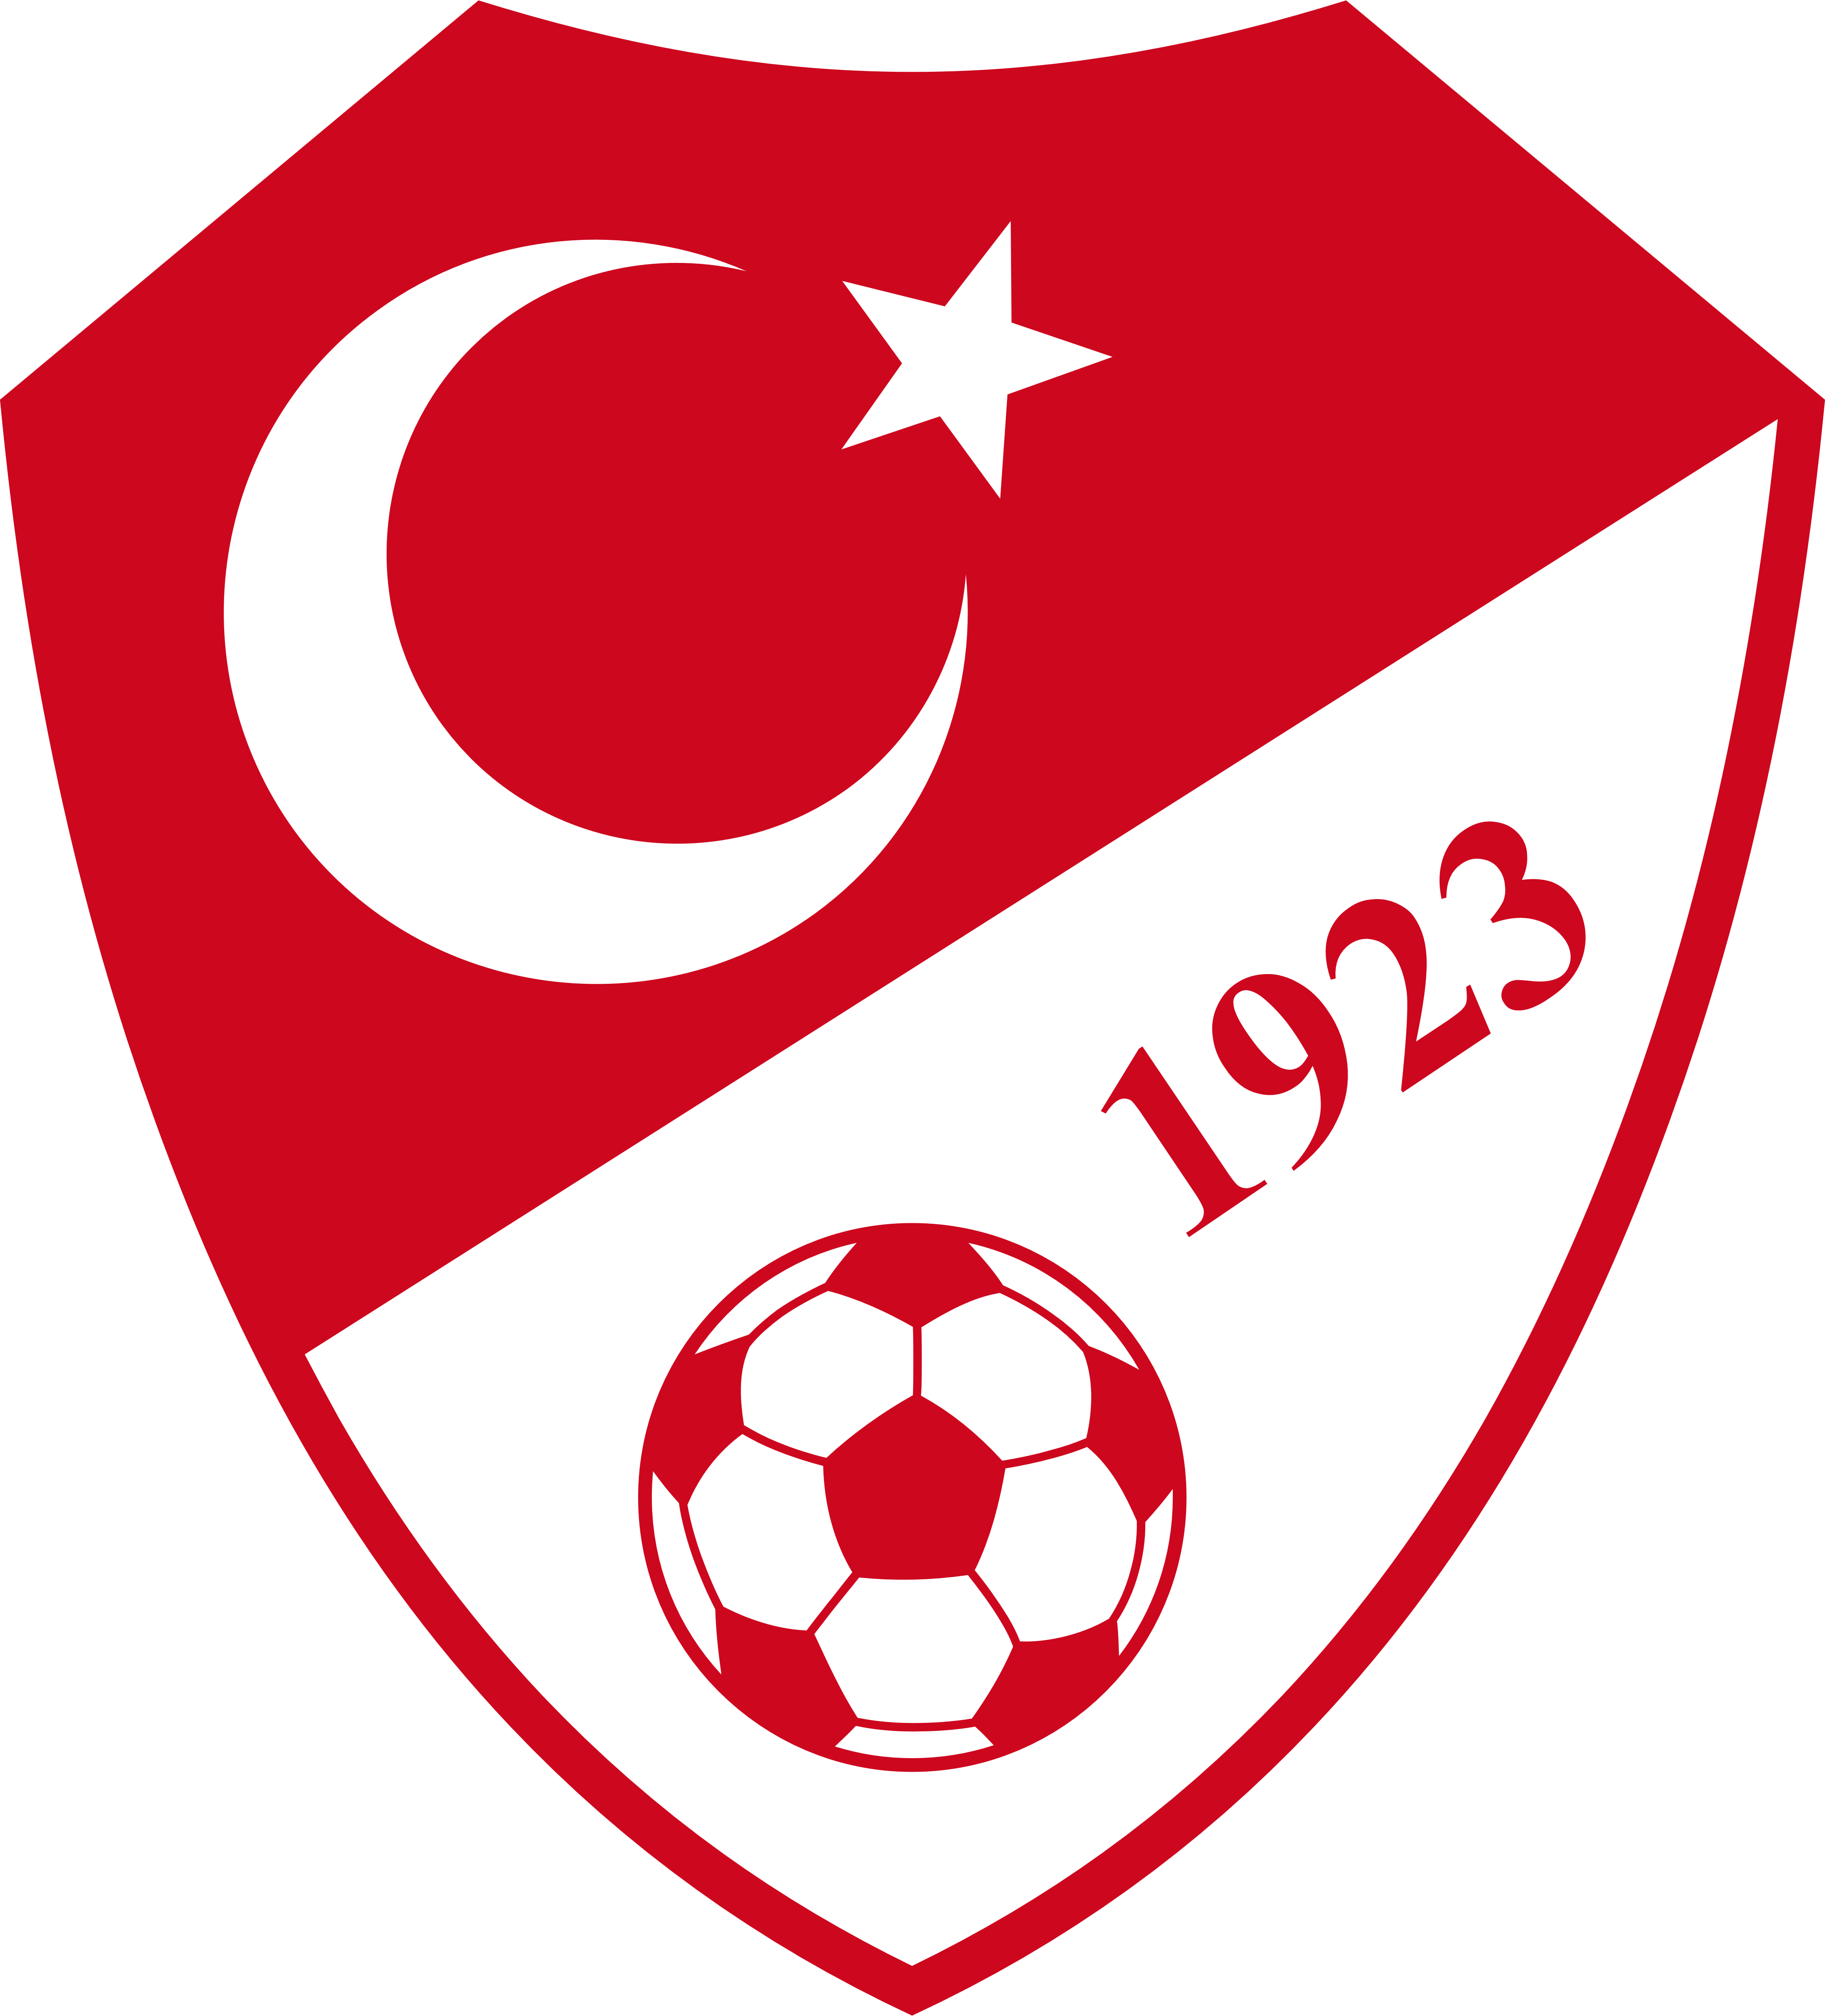 Turkey National Football Team &ndash Logos Download - Turkey National Football Team Logo Clipart (4527x5000), Png Download